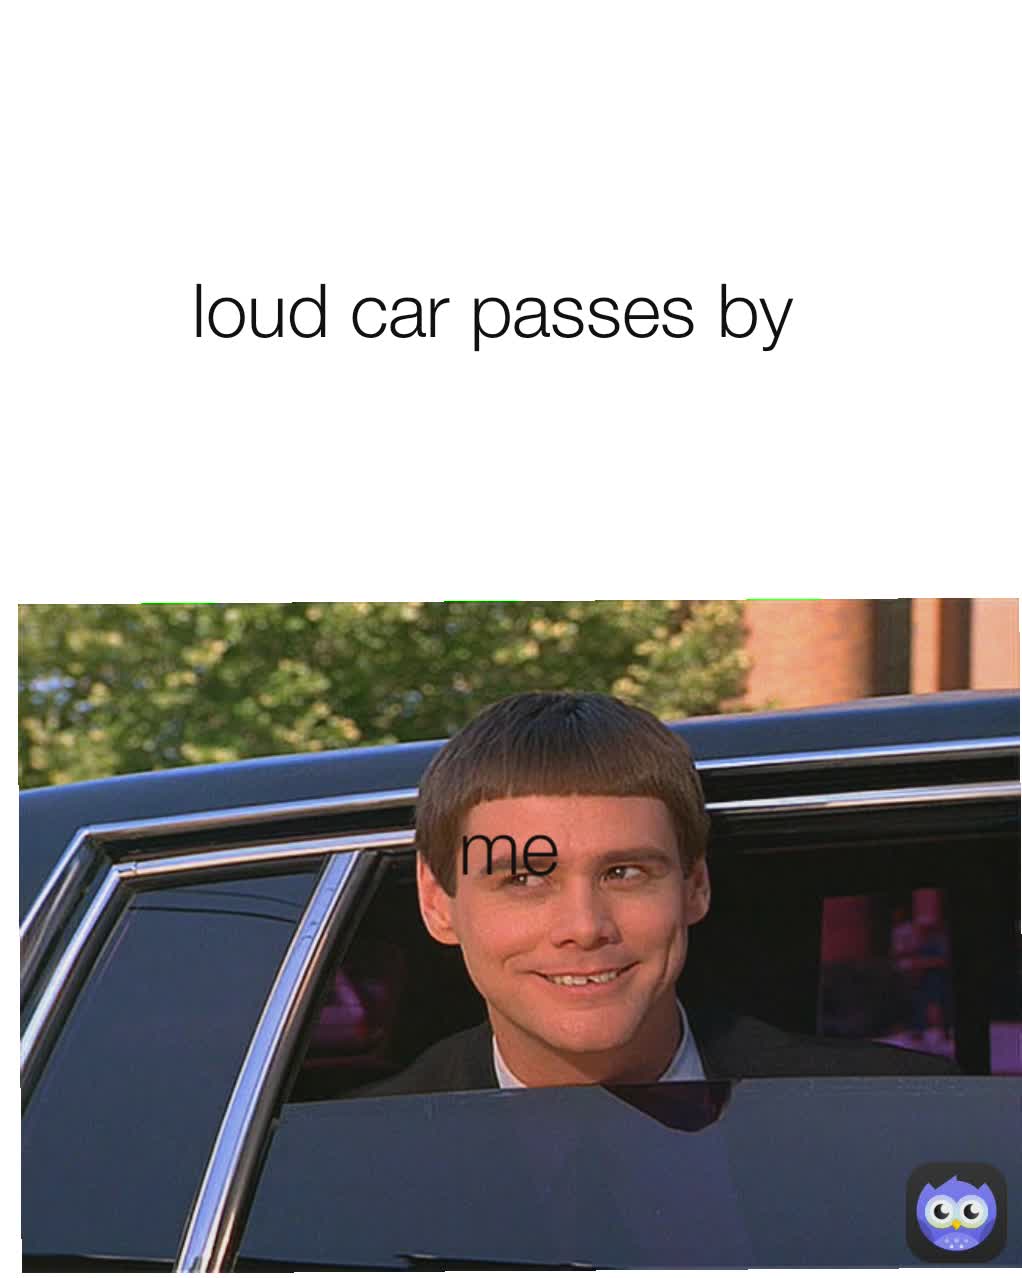 me loud car passes by 